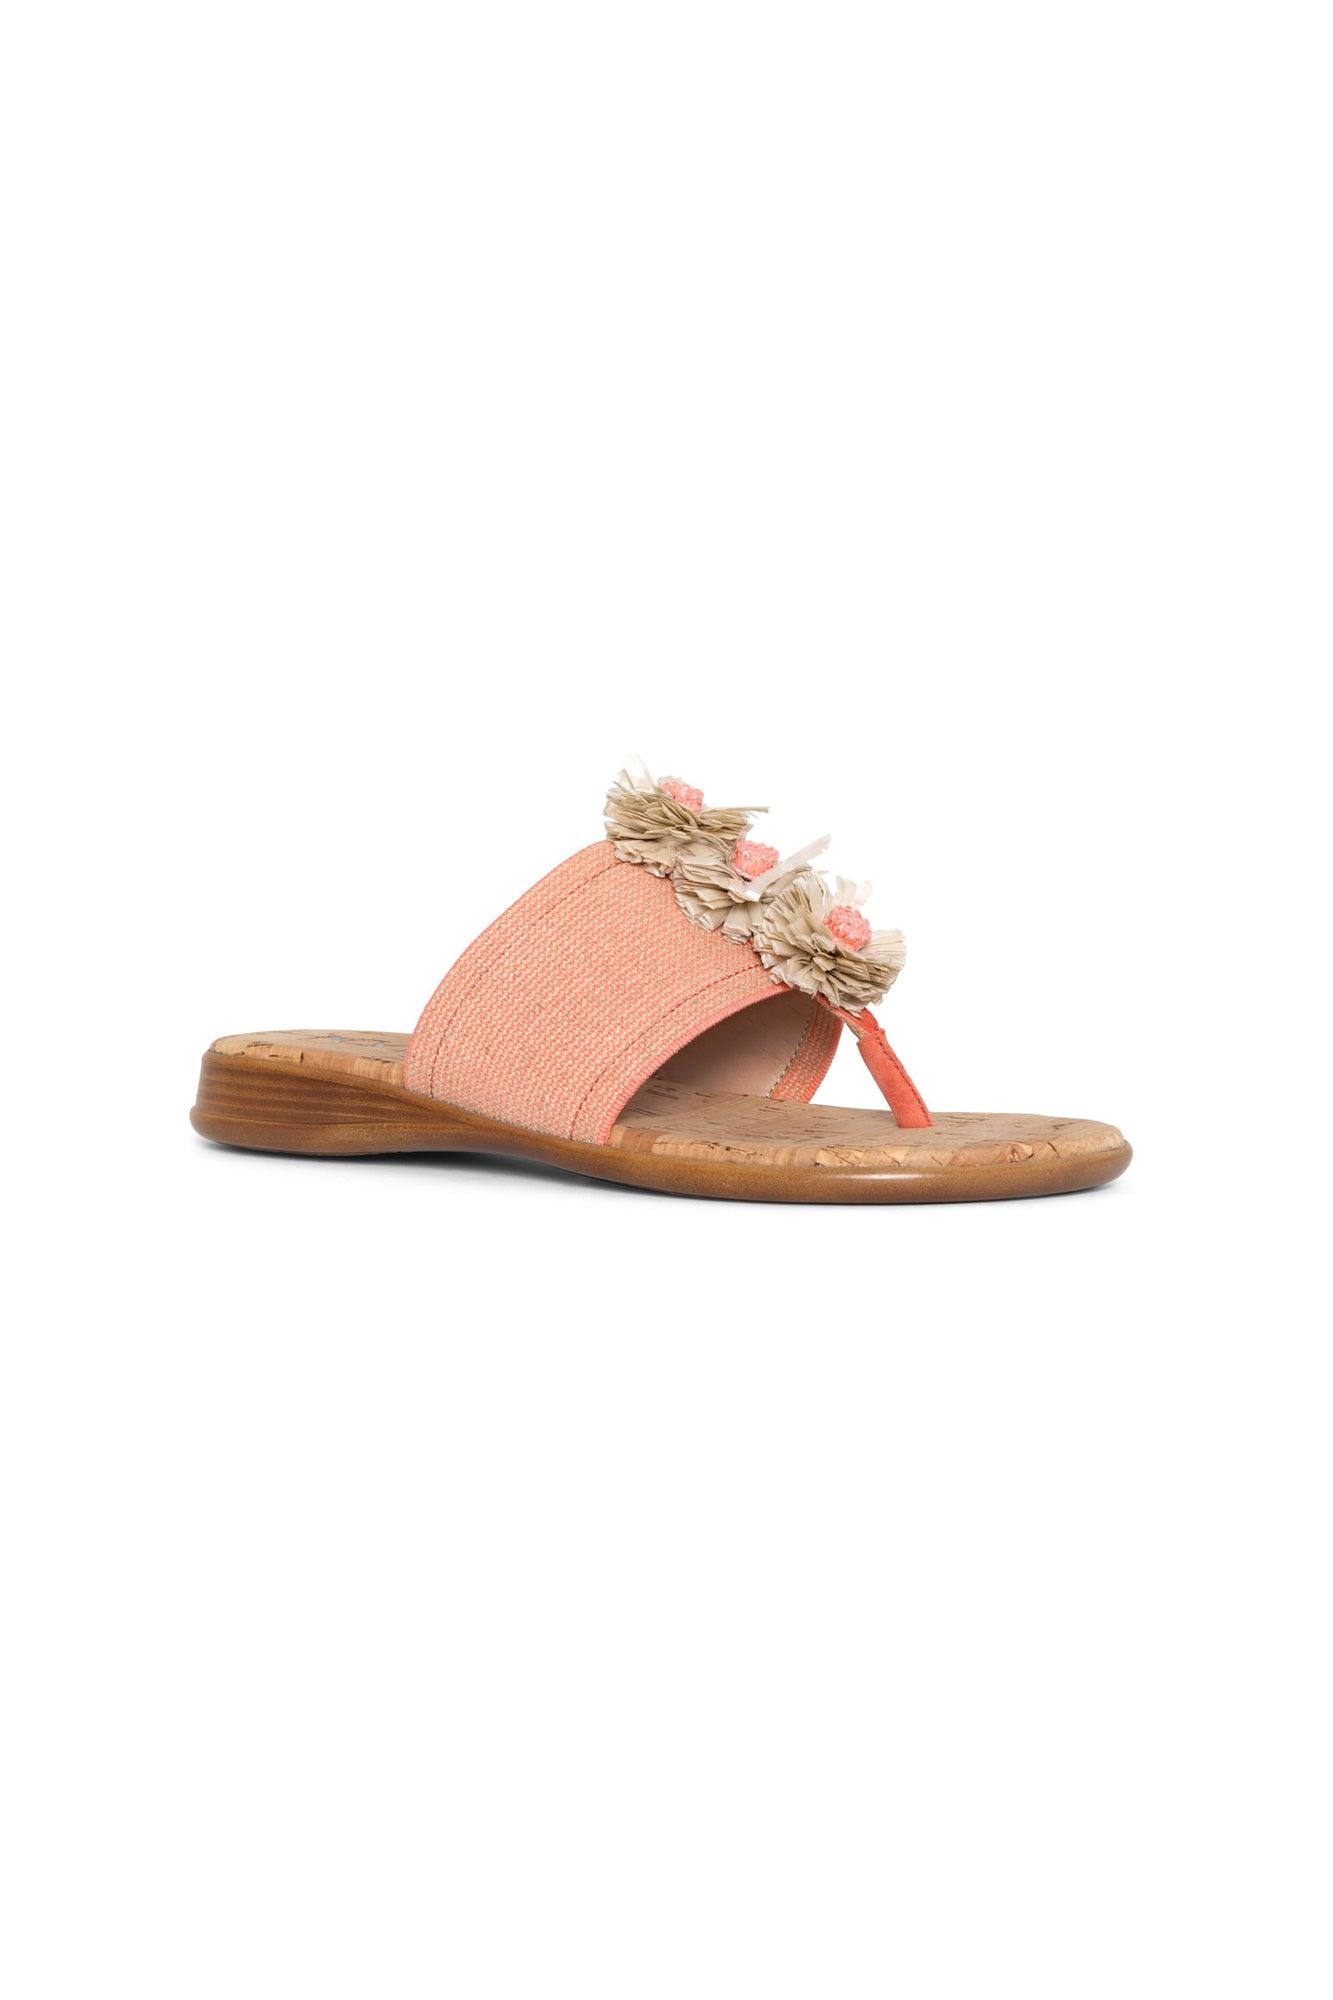 NYDJ Asira Sandals In Stretch Jute - Coral